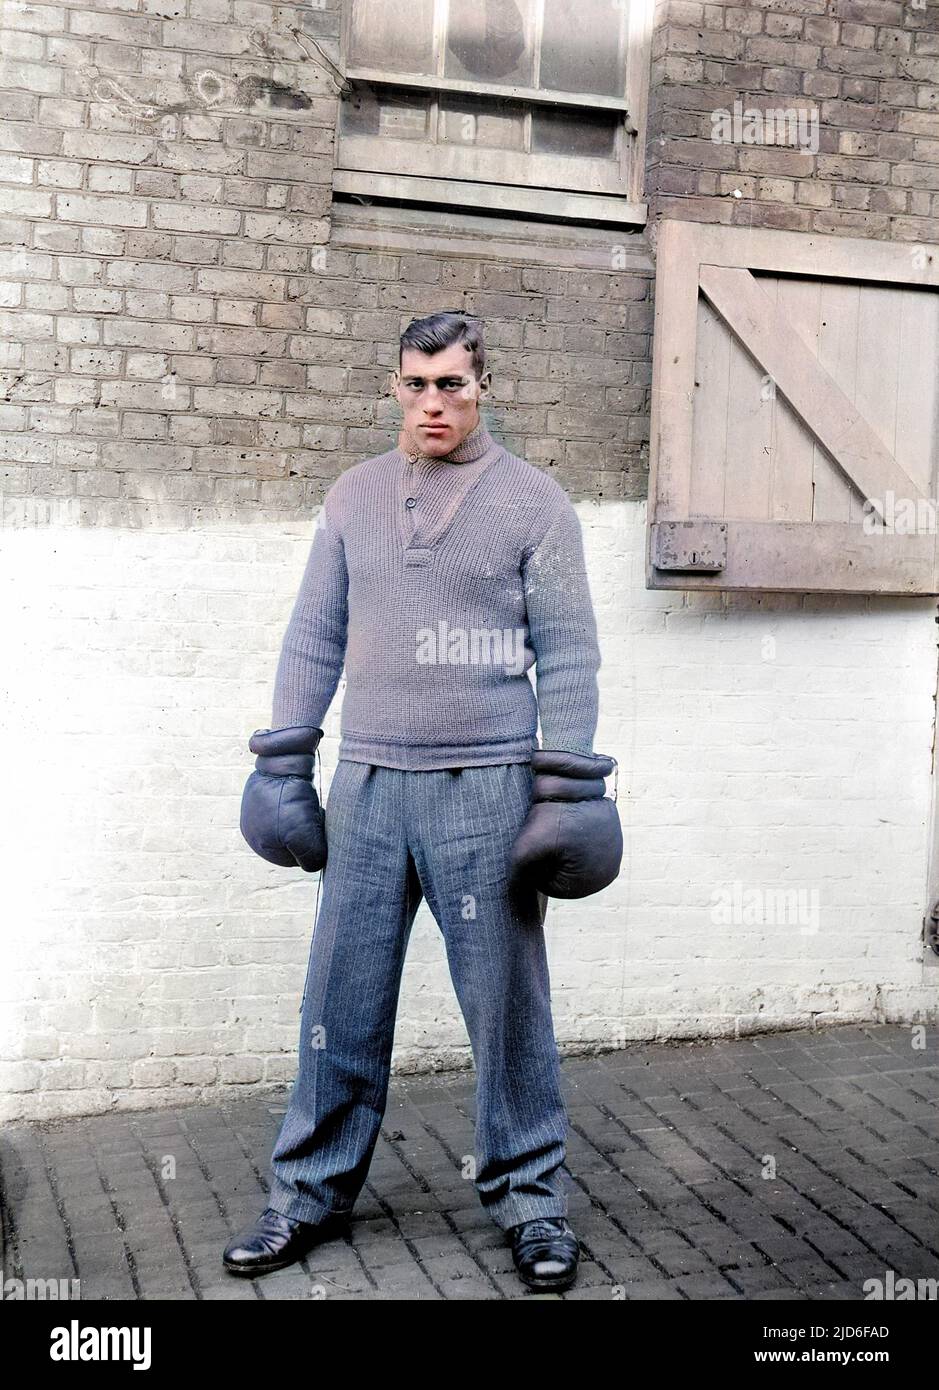 Pugile italiano, primo Carnera, campione del mondo dei pesi massimi 1933 - 1934. Versione colorata di : 10164394 Data: 1906 - 1967 Foto Stock